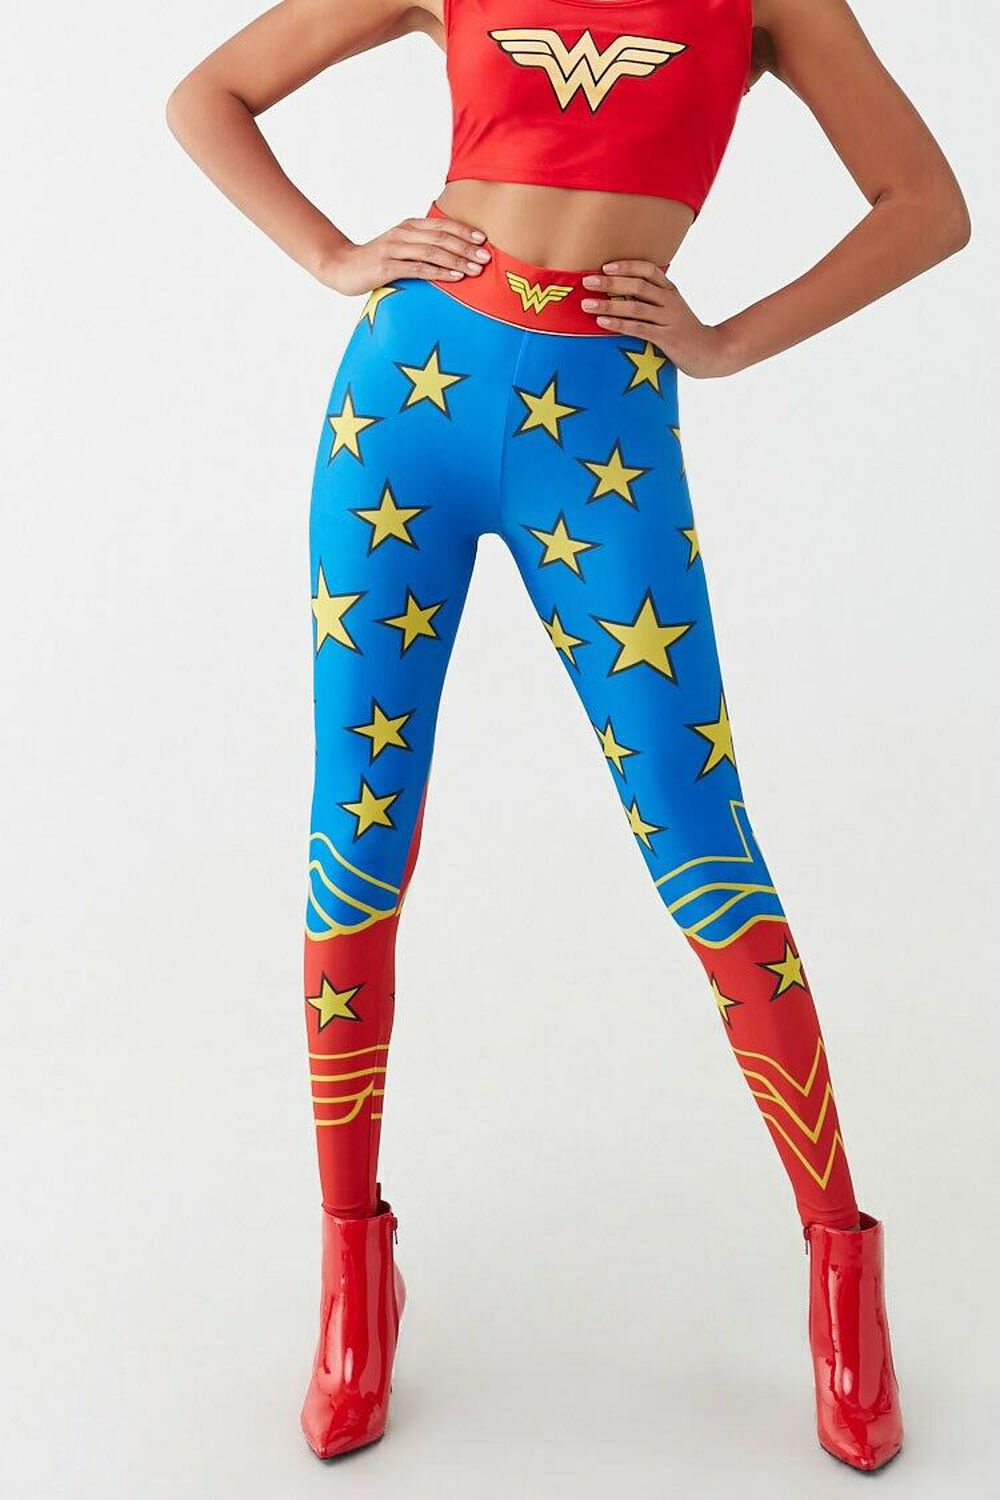 Wonderwoman Blue Leggings – Indelicate Clothing